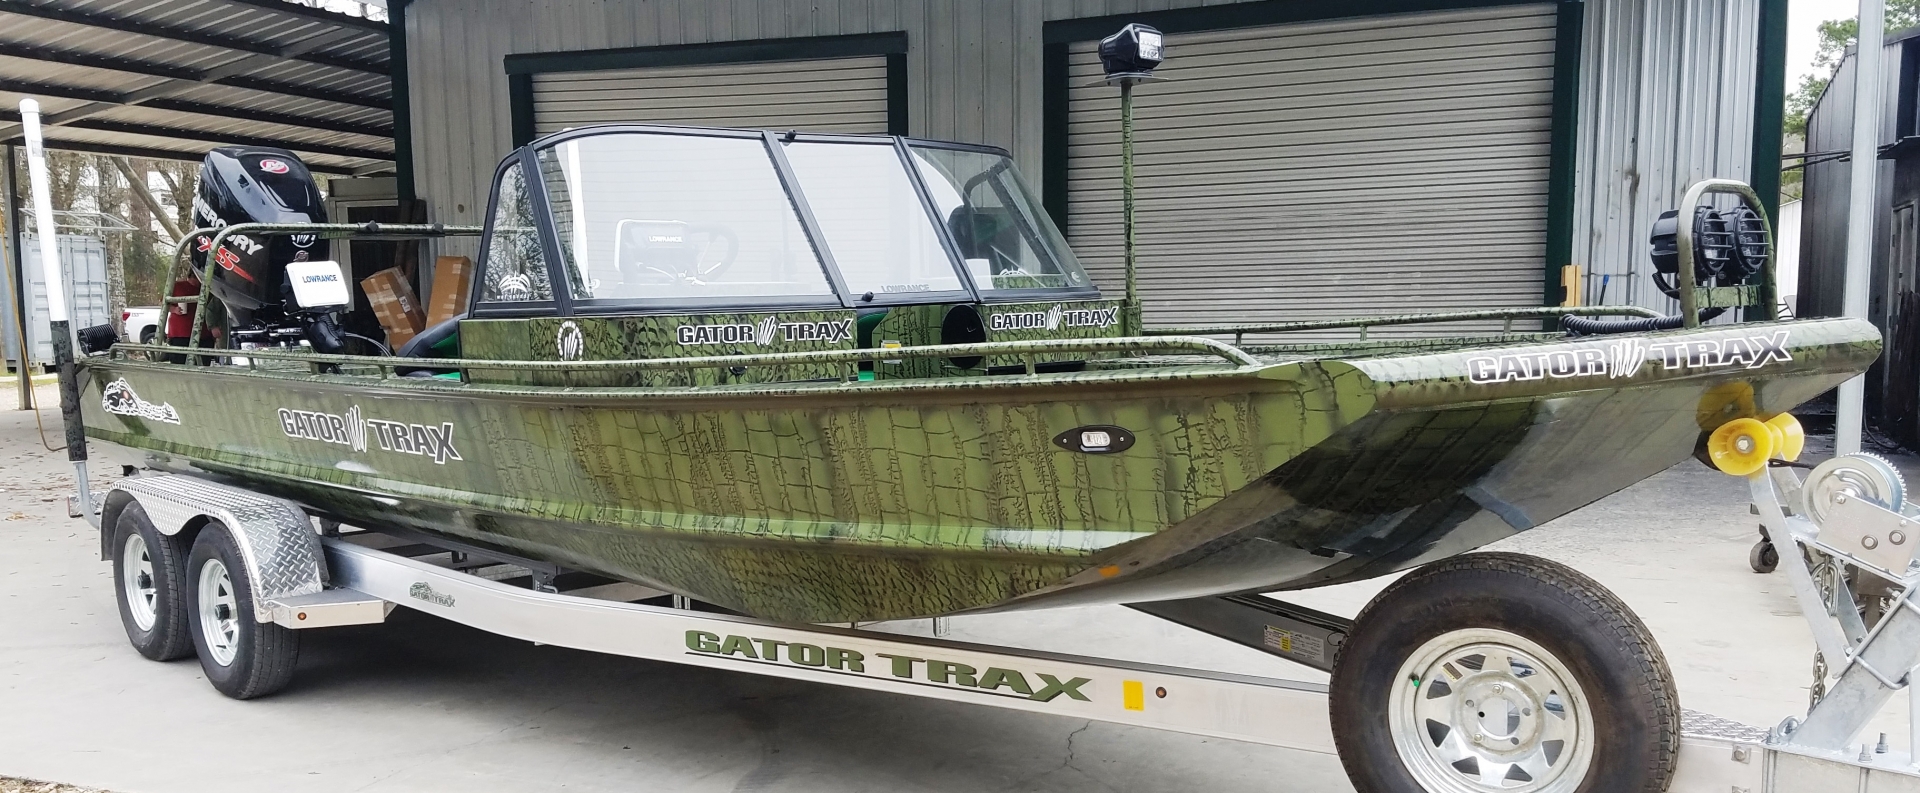 22x70HD w/250 Merc Pro XS Mudbum's Boat (Original Gator Skin) .